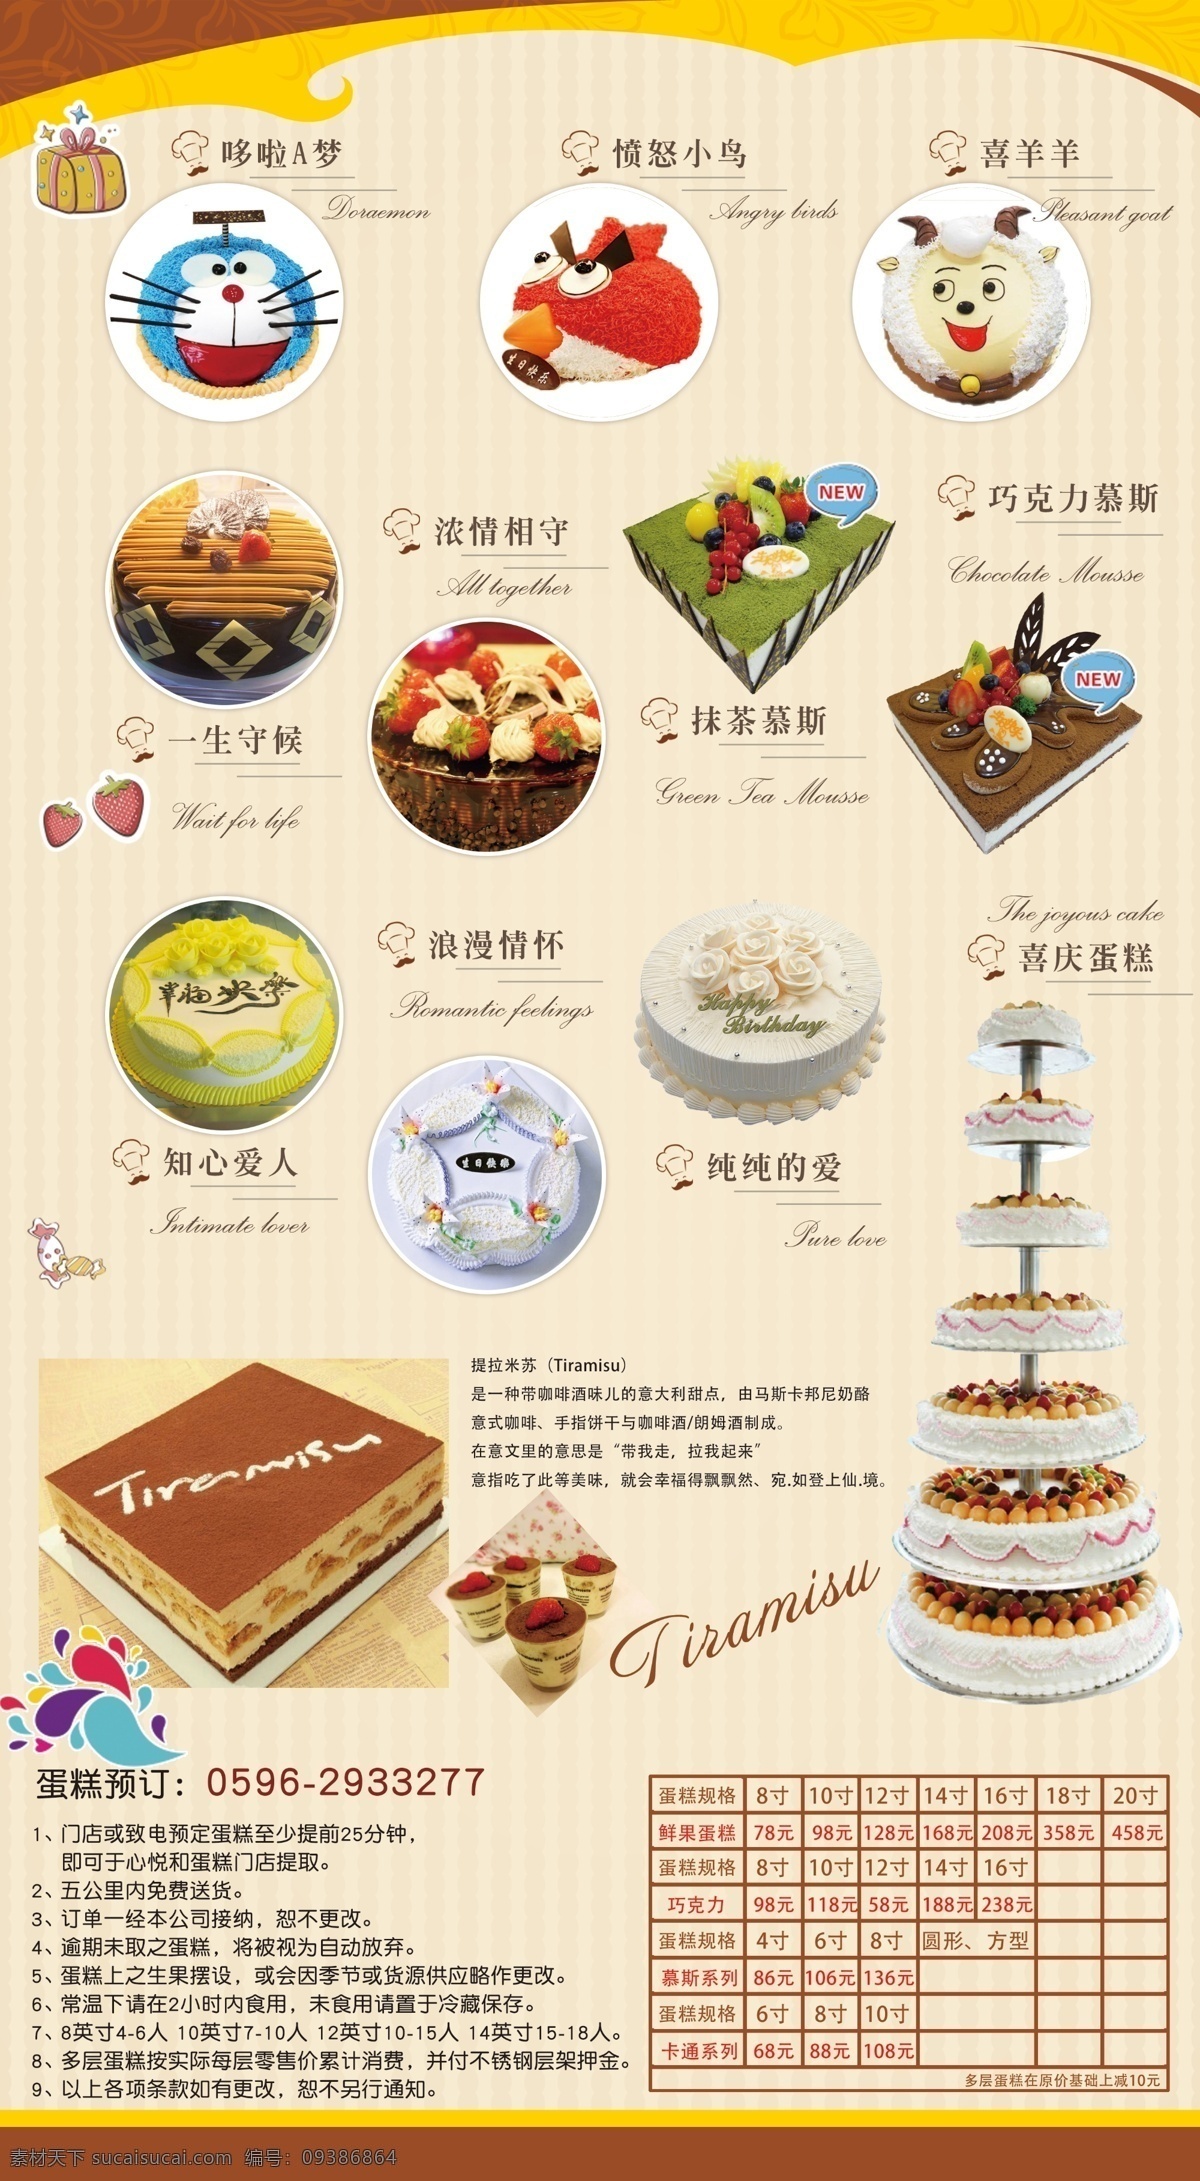 蛋糕 菜单 折页 dm 五折页 价格 传单 清晰 时尚 简洁 表格 描述 格式 提拉米苏 厨师 广告展板 dm宣传单